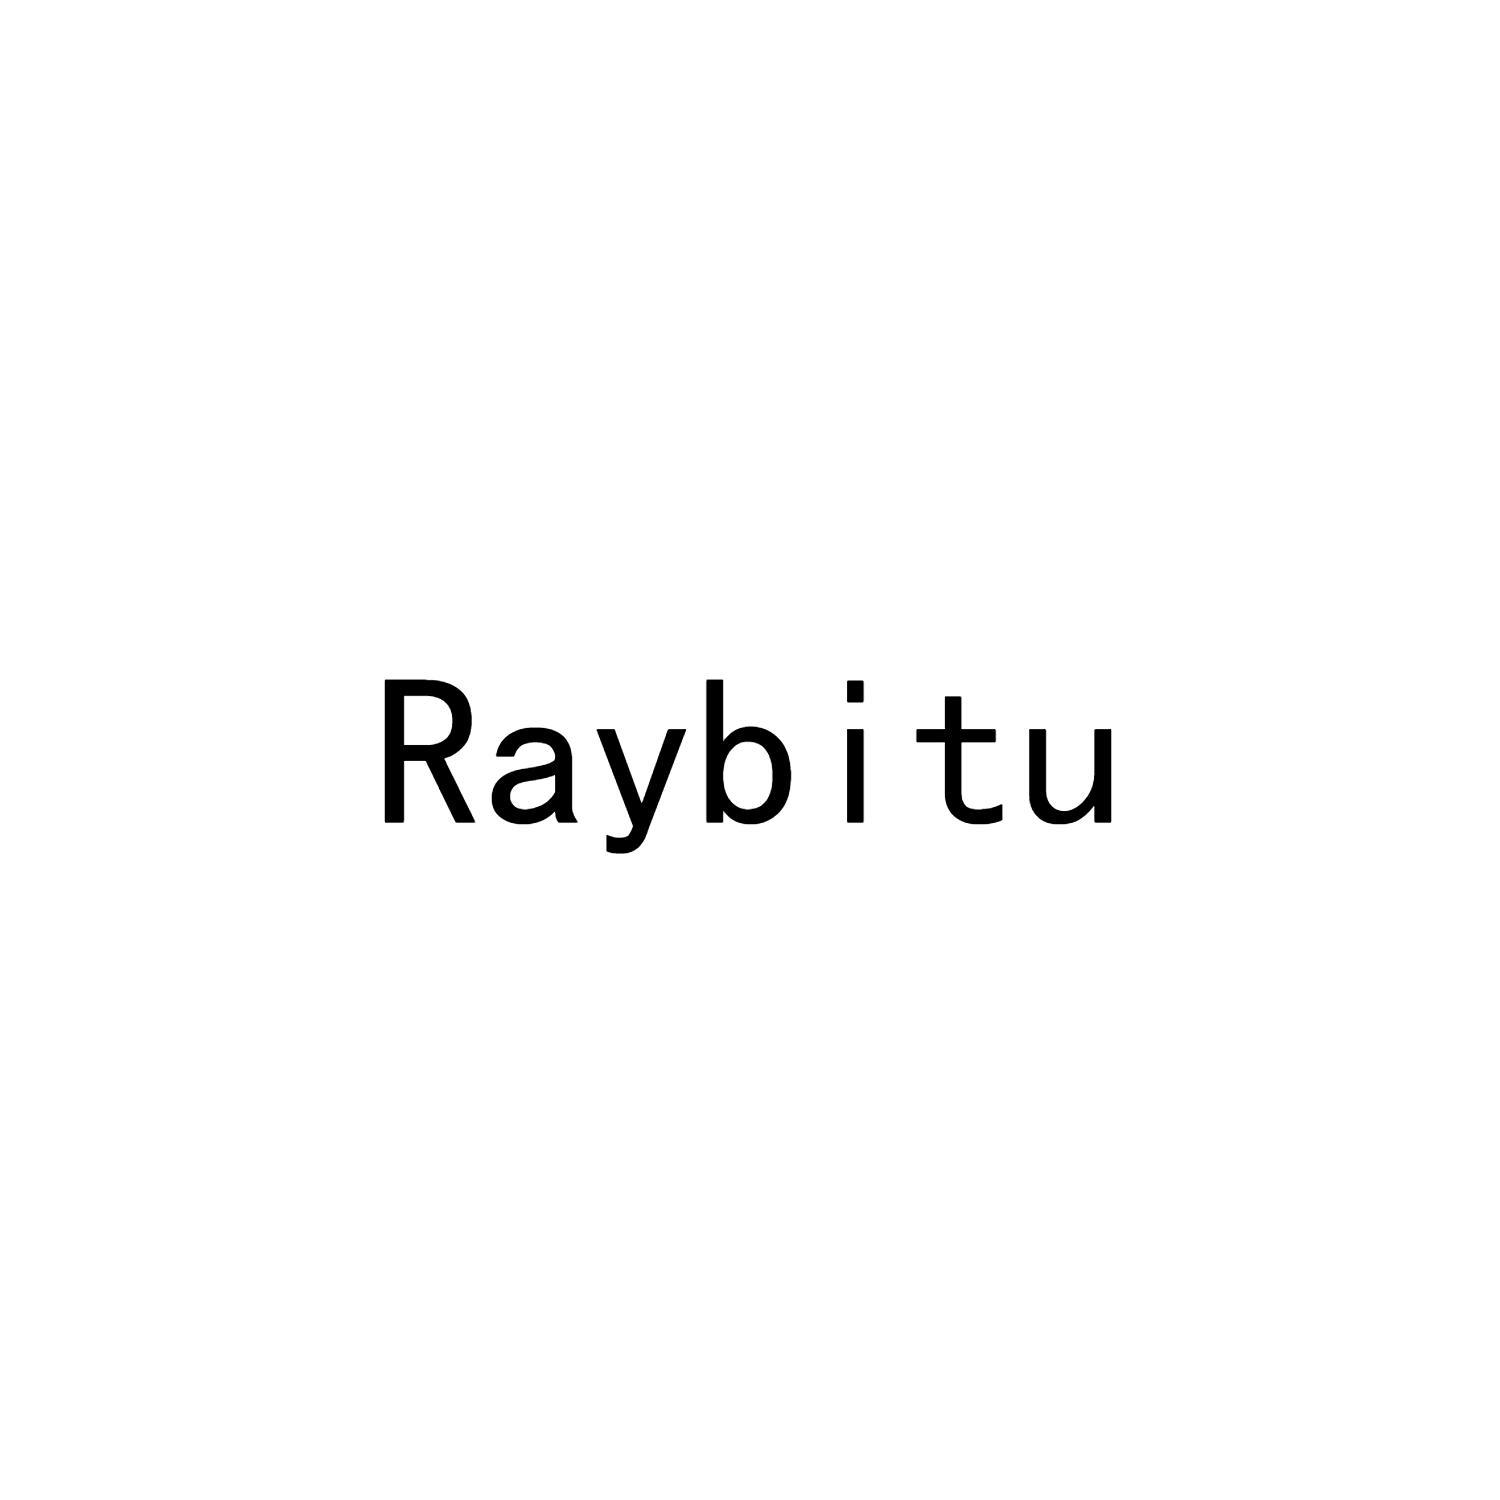 RAYBITU